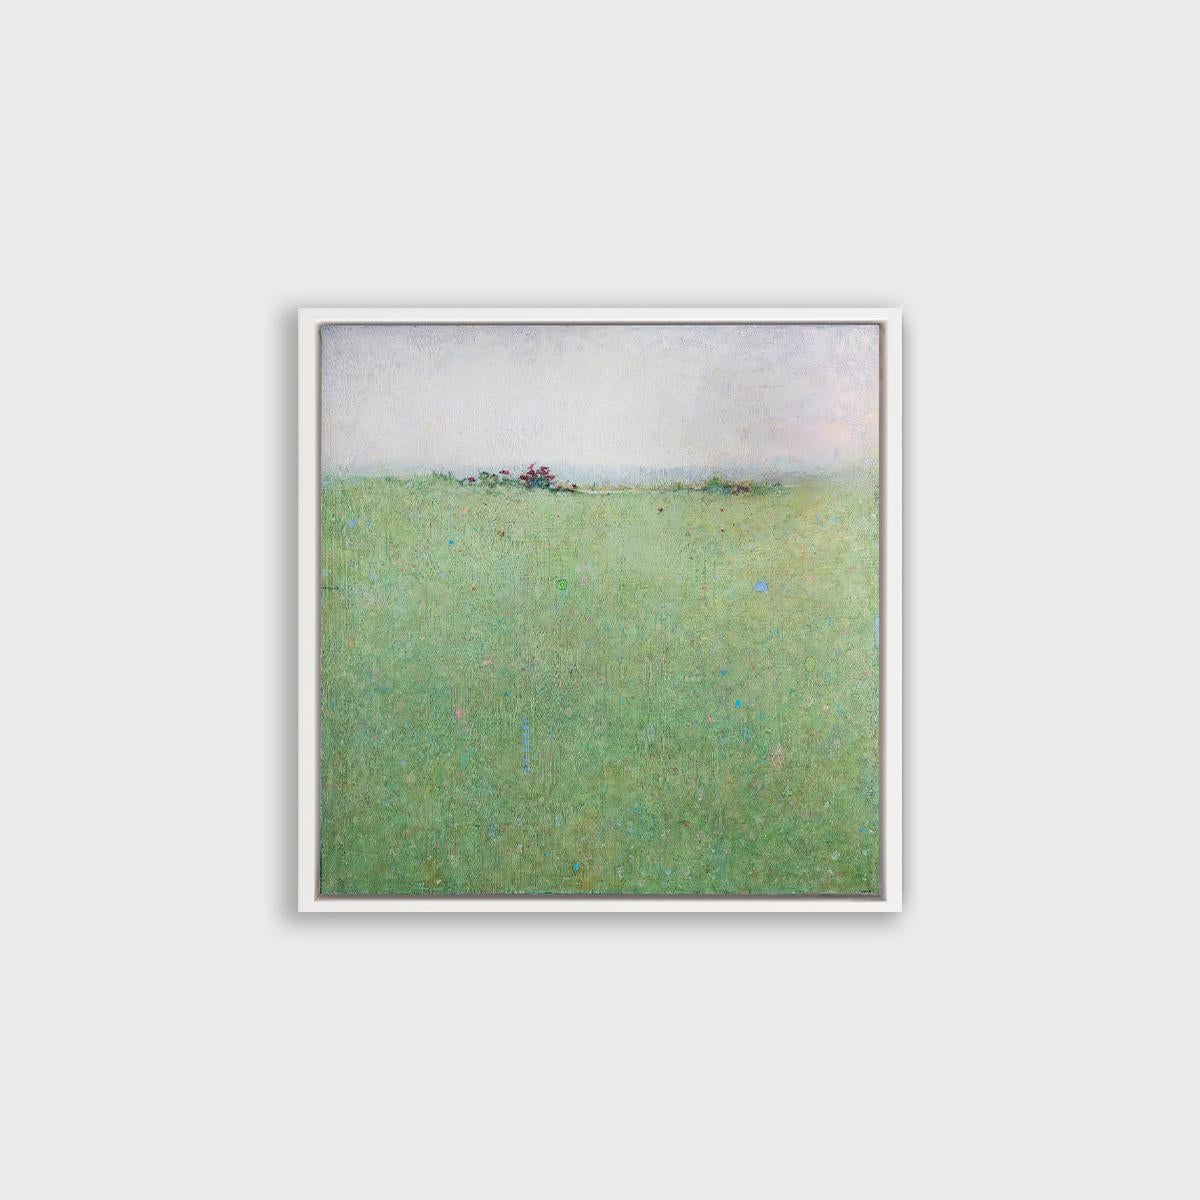 Cette impression à tirage limité est un paysage abstrait d'Elwood Howell. Il présente une ligne d'horizon haute et floue, avec du vert en dessous et du gris clair au-dessus. La zone verte est parsemée de petites taches de couleur vive comme le bleu